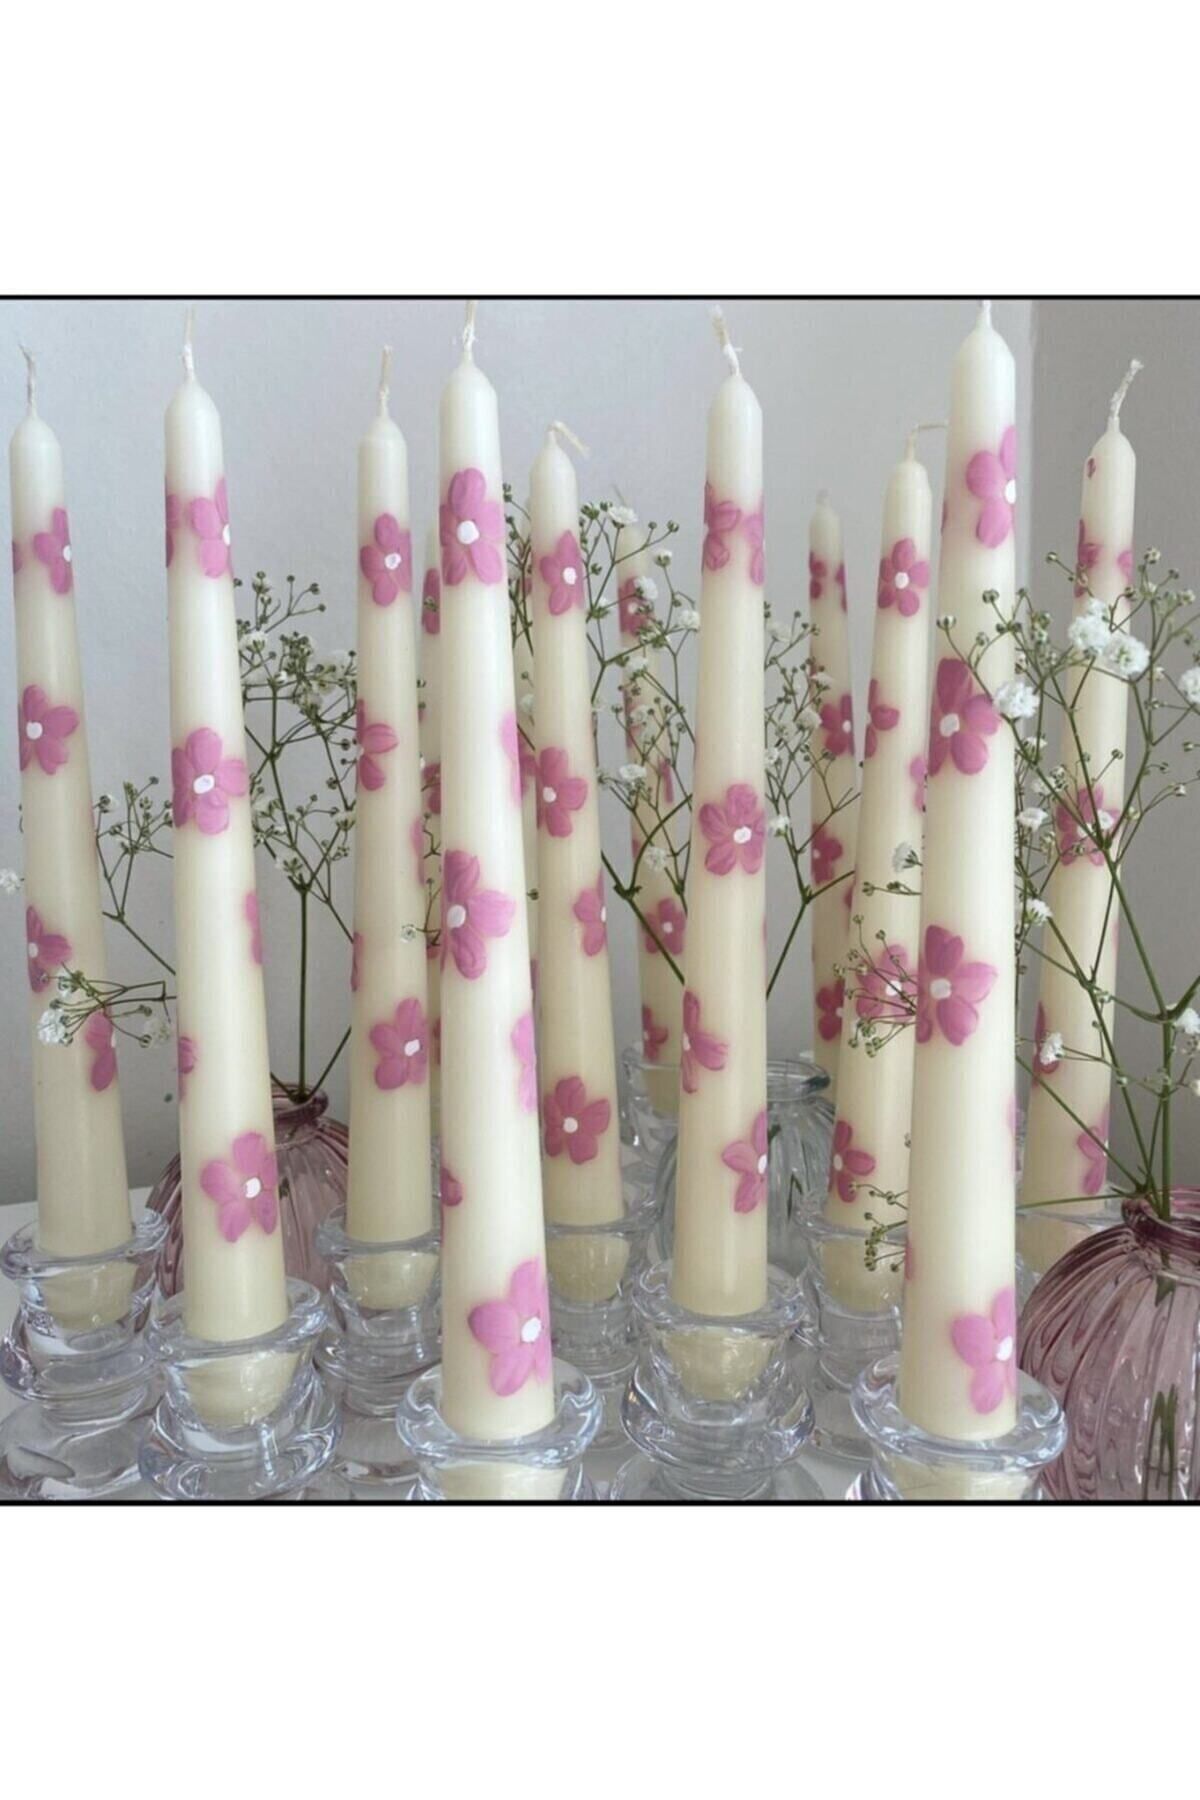 YABA Beyaz Pembe Çiçekli Şamdan Mumu El Çizimi %100 Soyawax (VEGAN) Çiçekli Mum